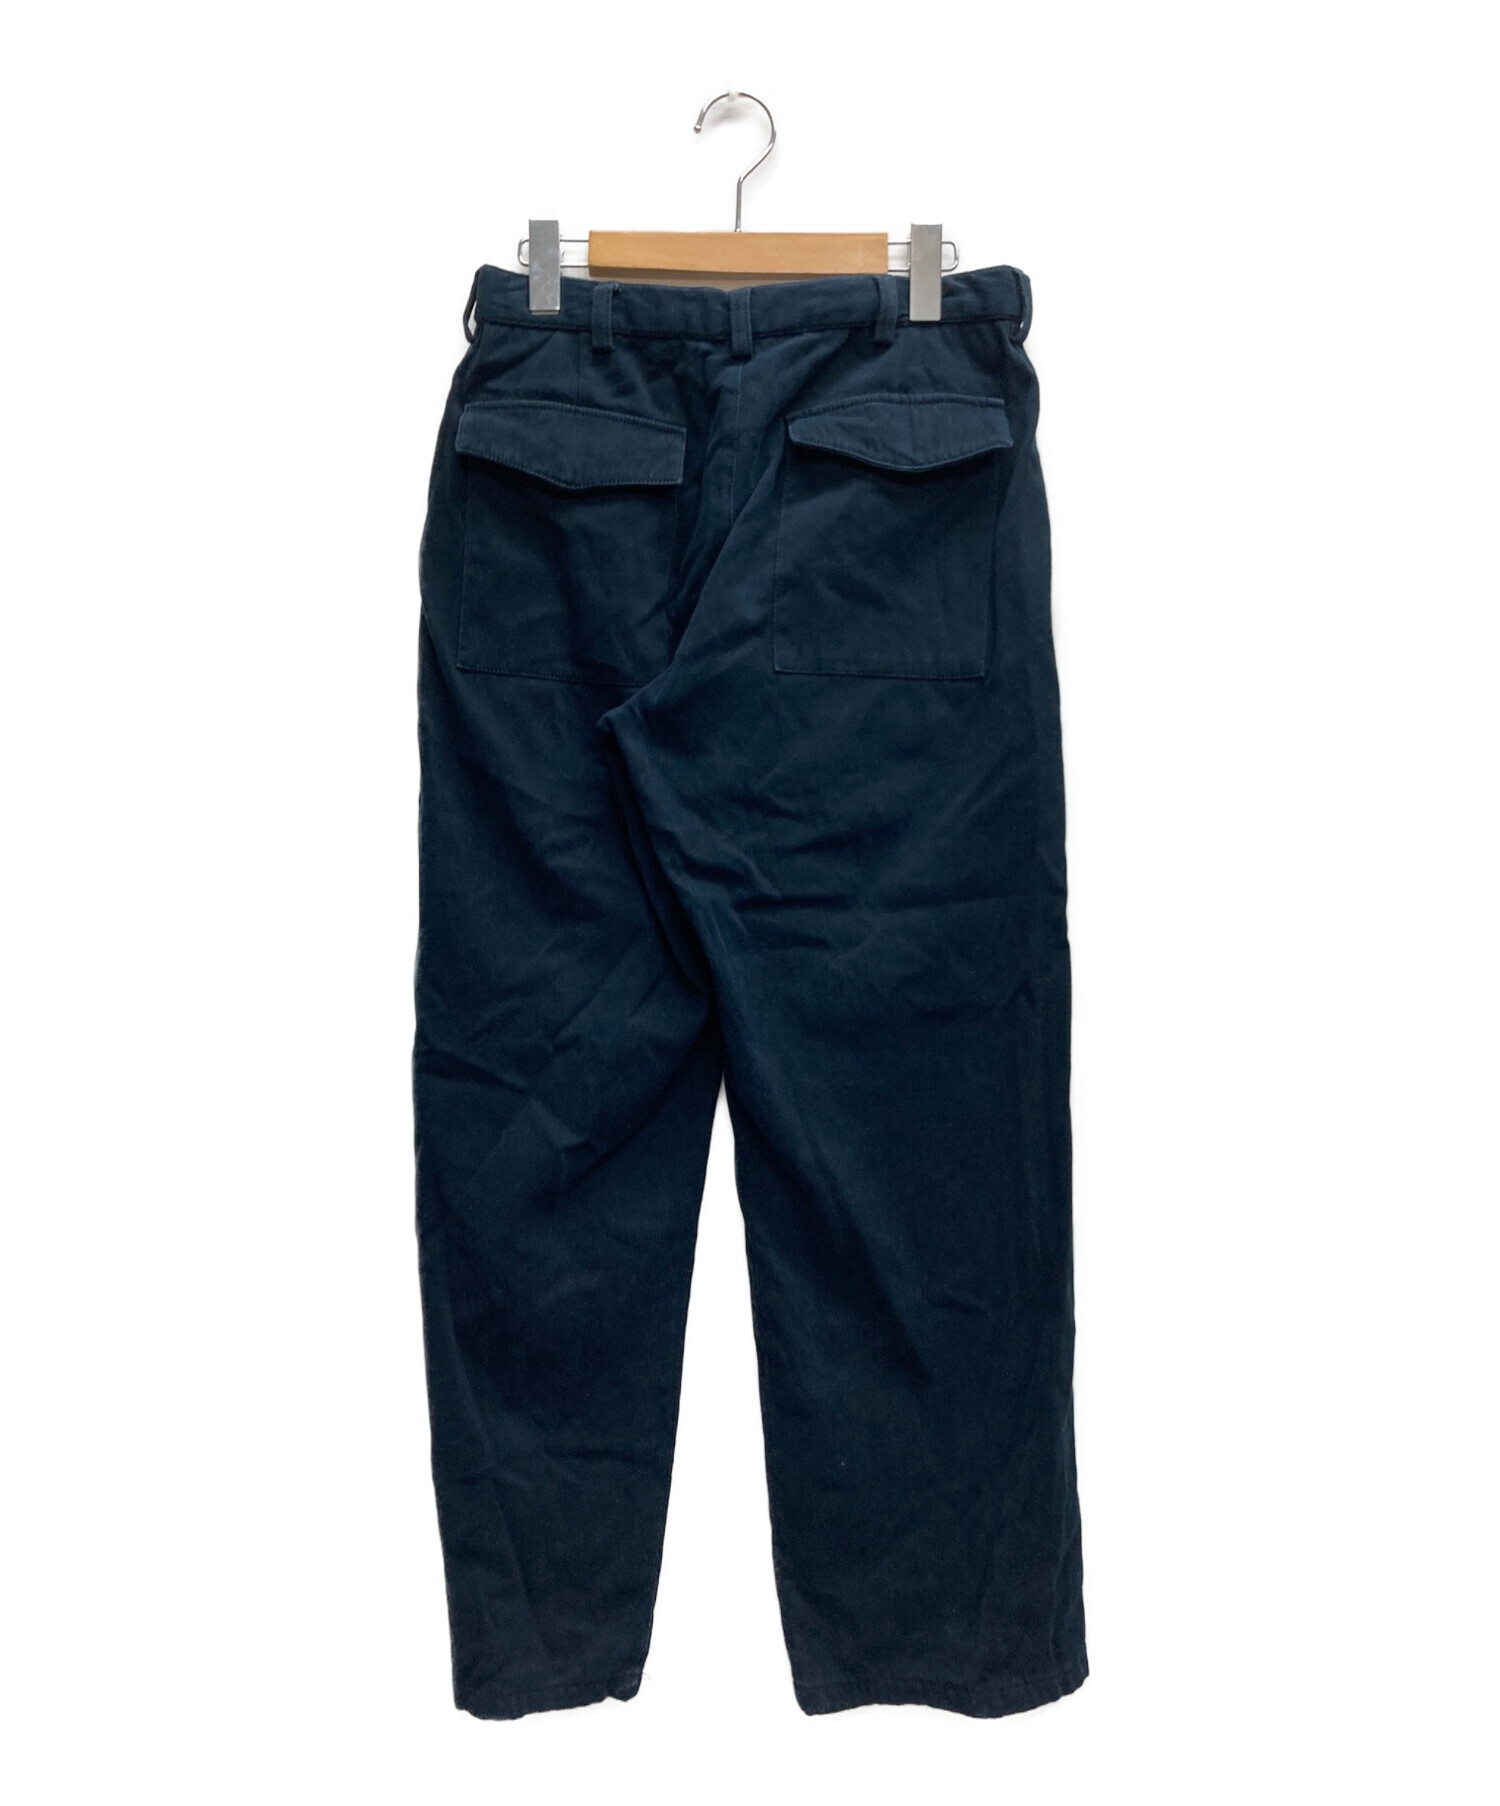 『ARMANI』/ アルマーニ ネイビー ブルー パンツ 46サイズ S 美品